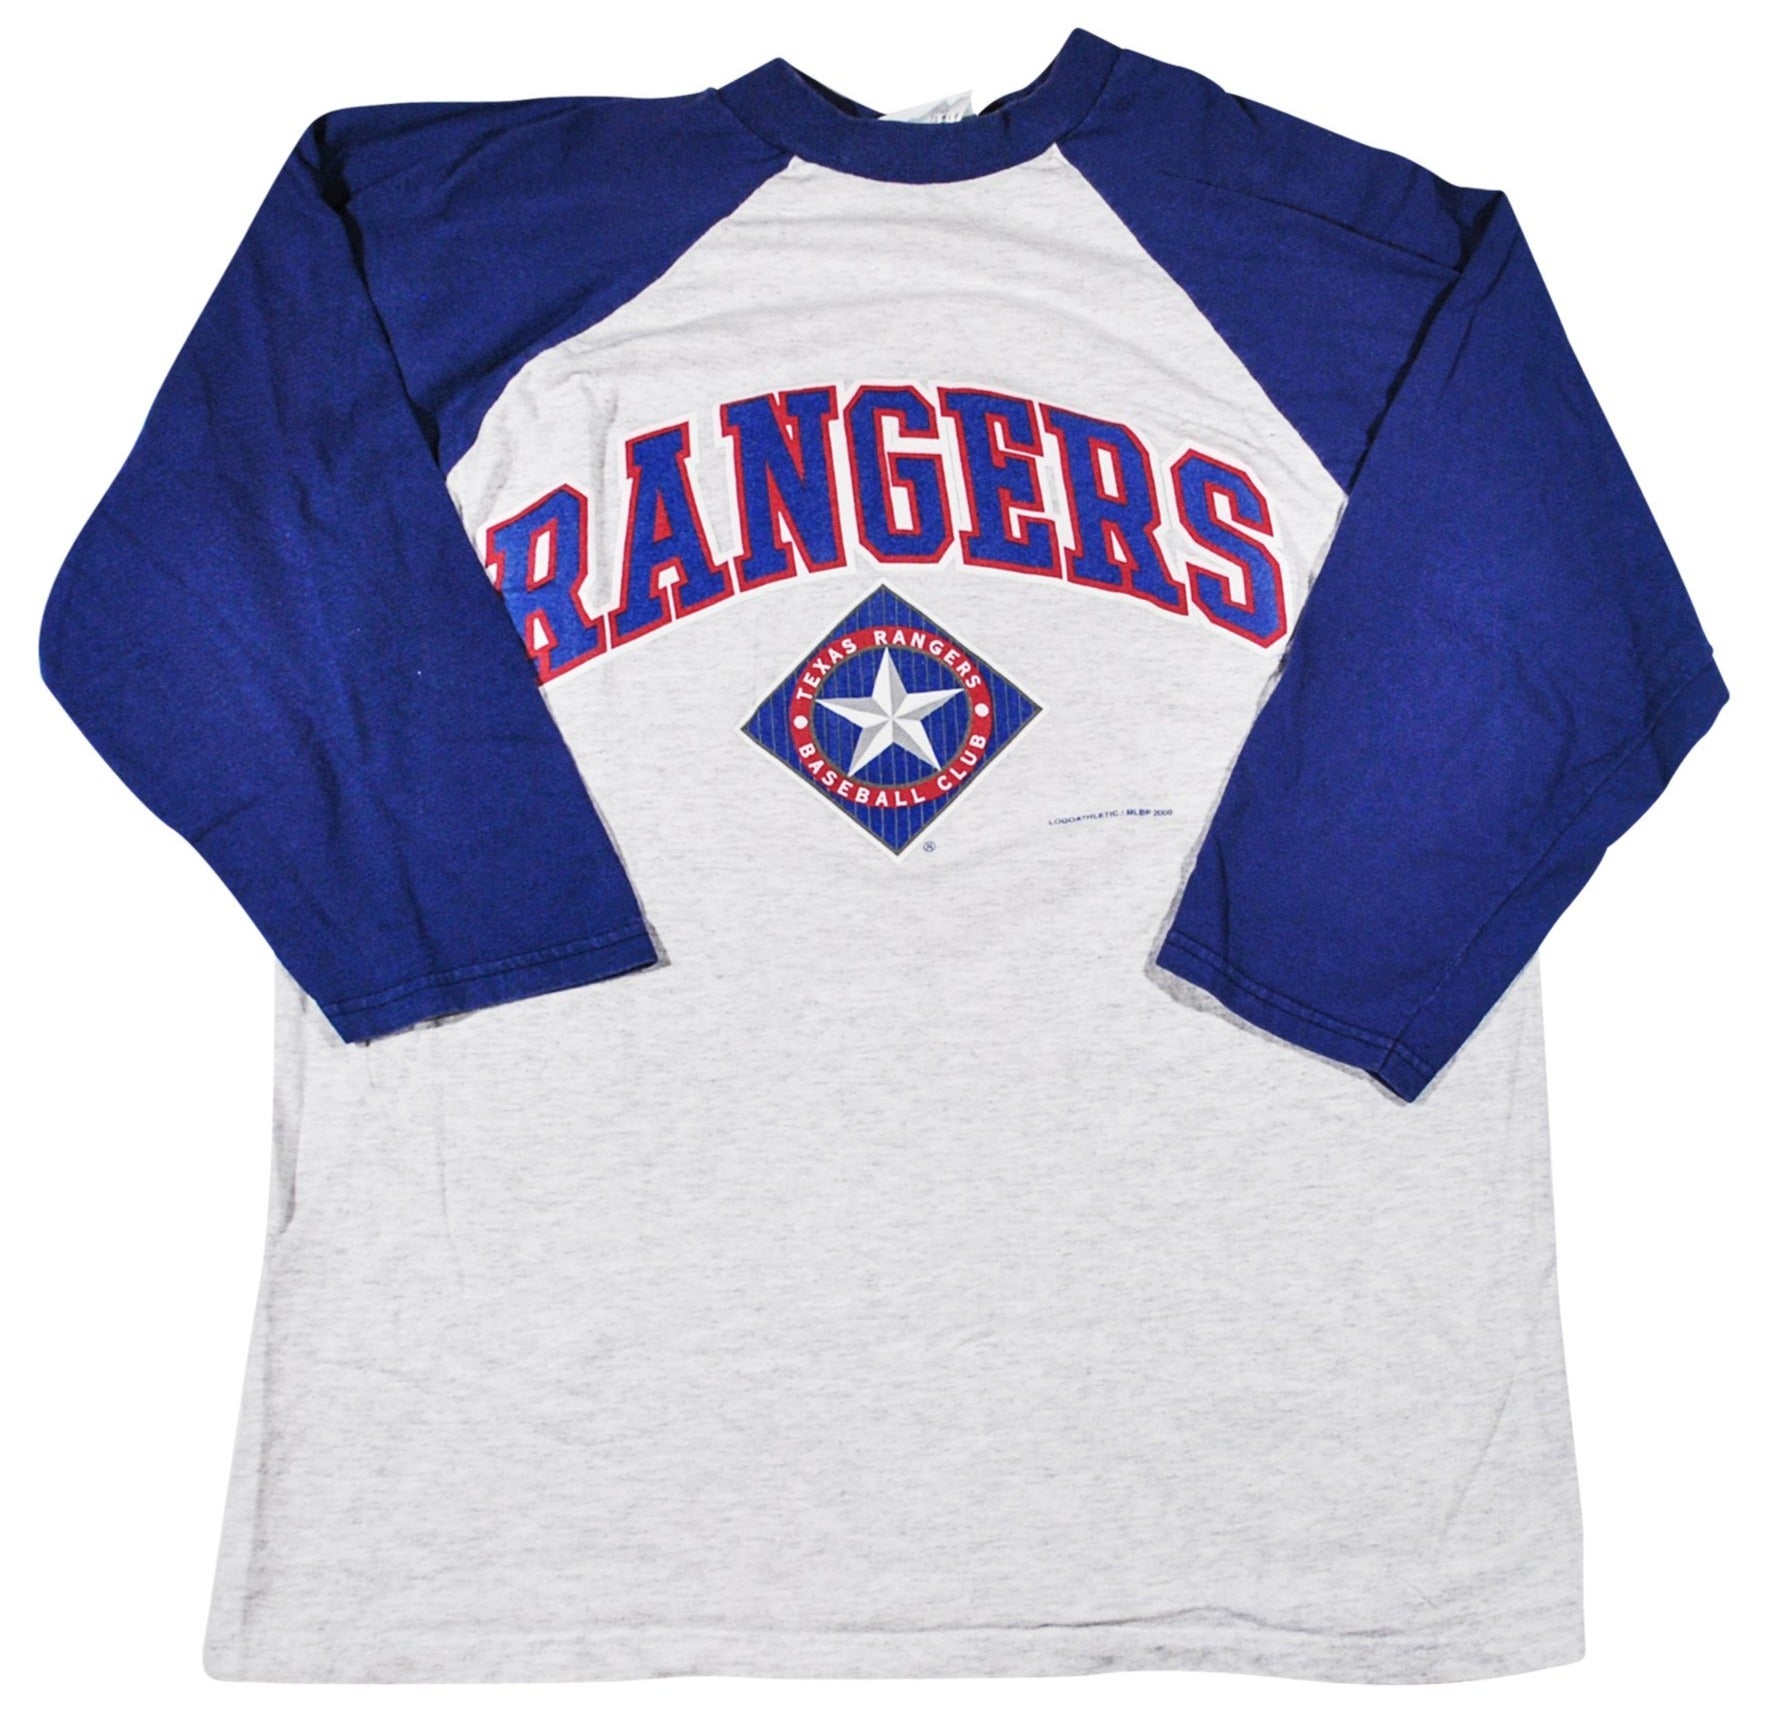 Texas Rangers T-shirts in Texas Rangers Team Shop 